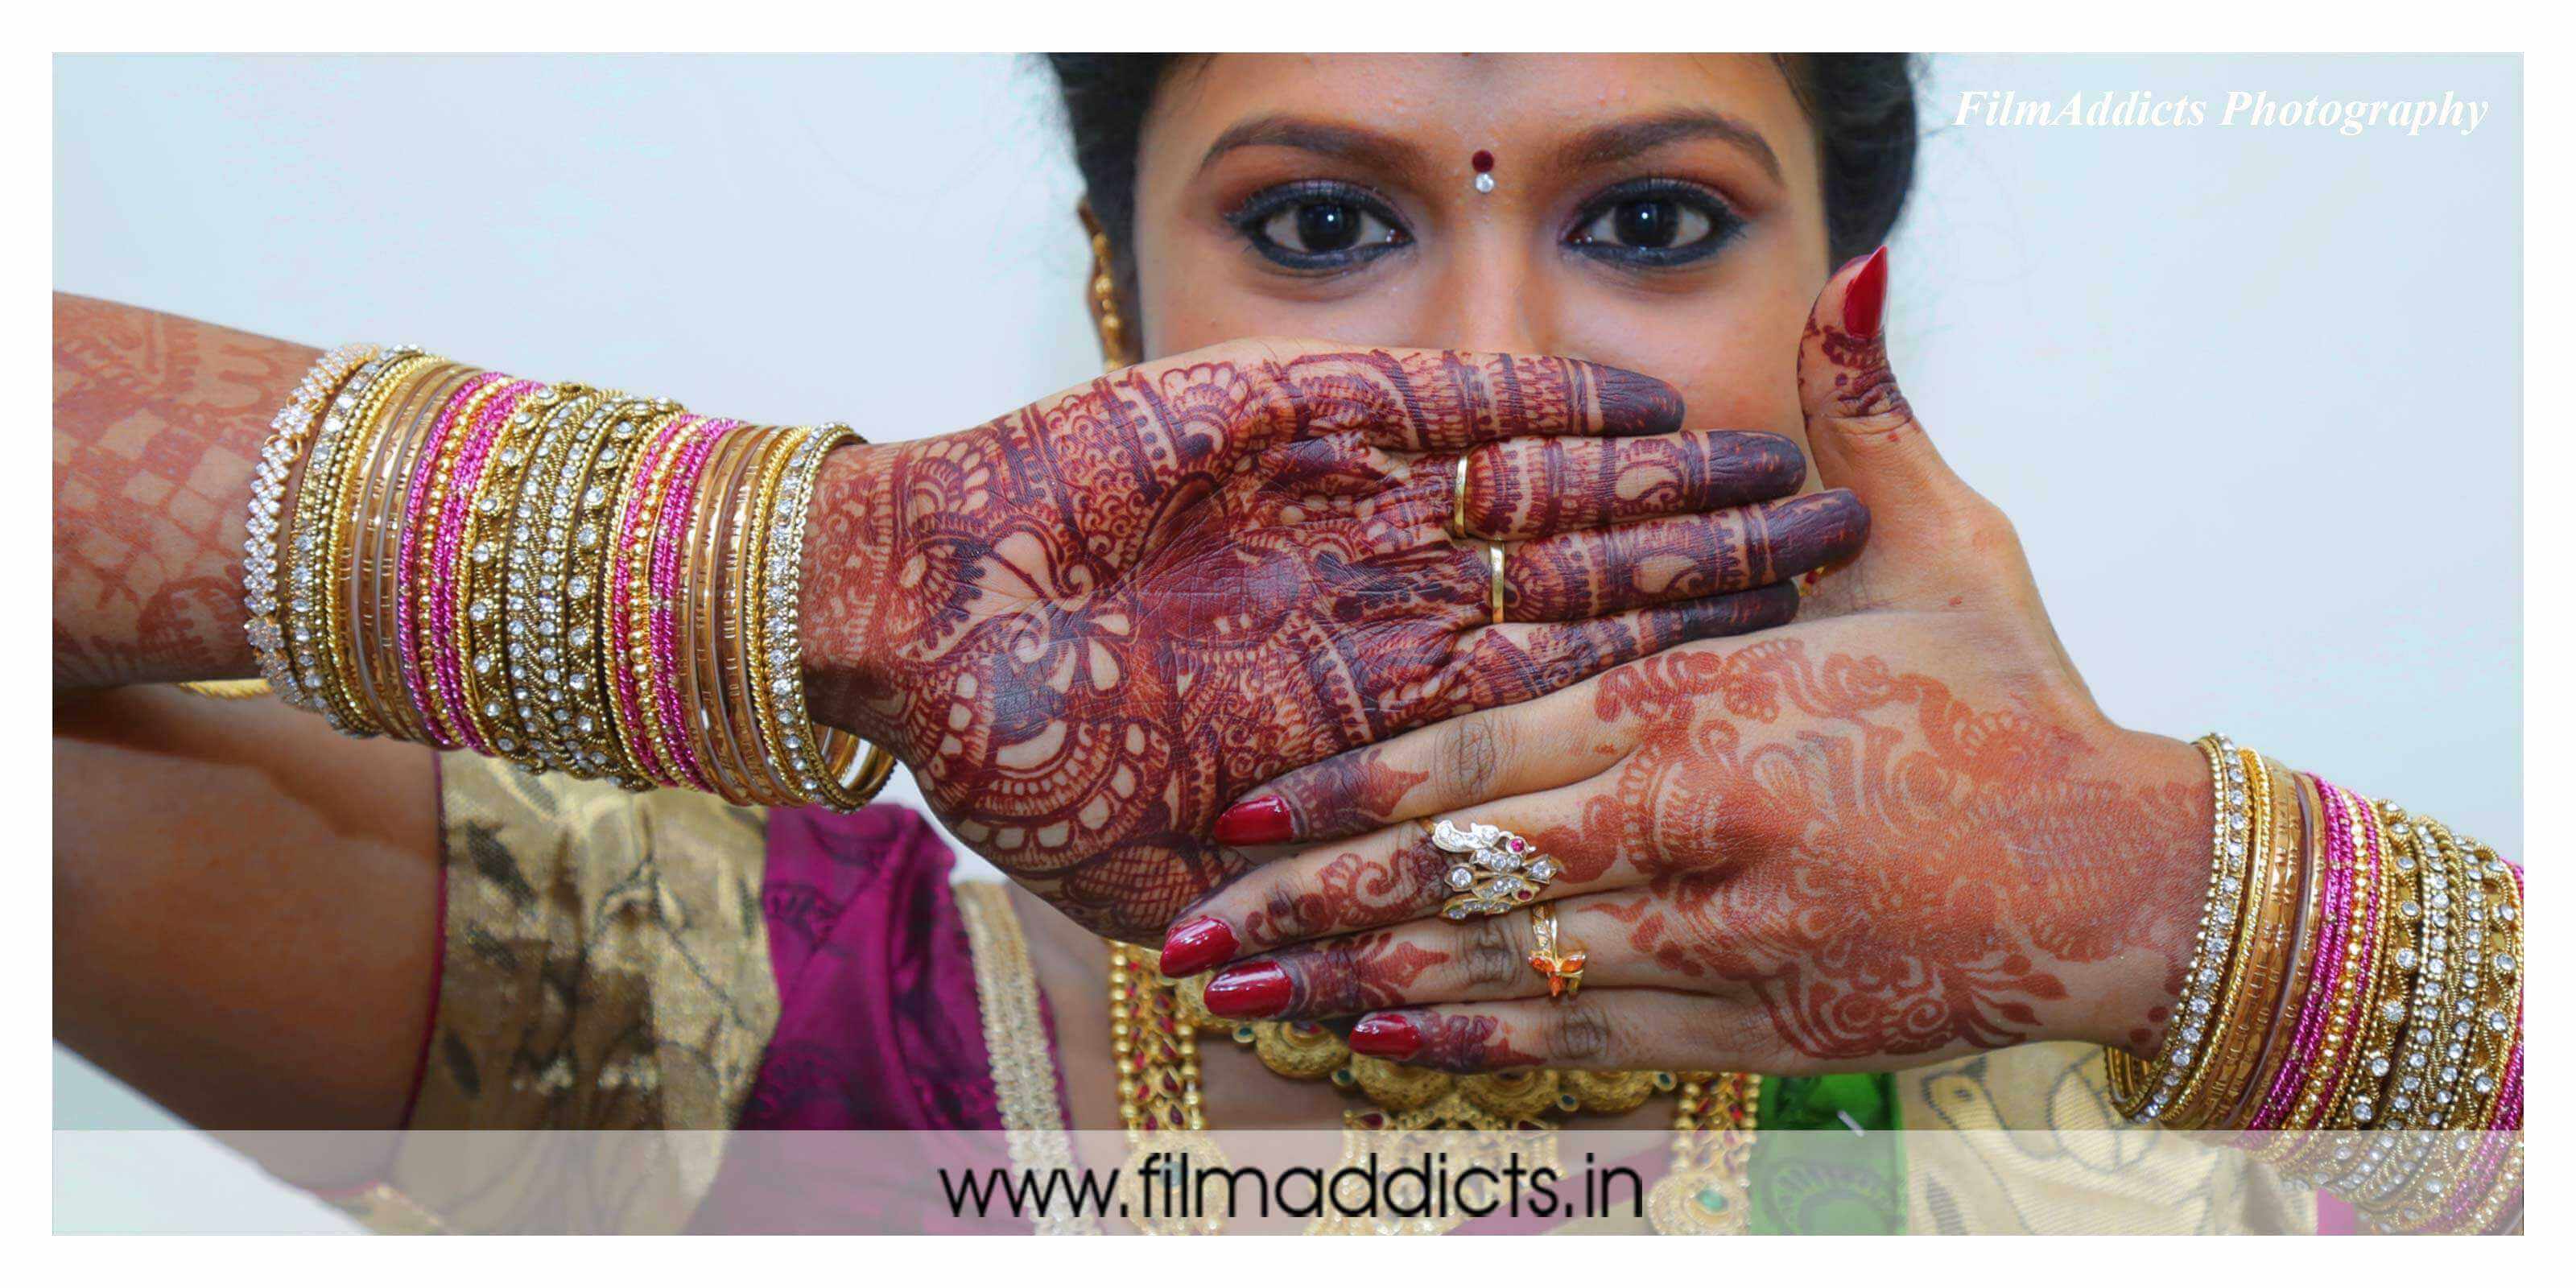 Best-Candid-Photo-in-madurai, best-candid-Photo-in-madurai,best-candid-Photo-in-madurai,Best Candid Wedding Photographer in Madurai,Best Candid Wedding Photographer in Madurai,creative-wedding-Photo-in-madurai,creative-candid-Photo-in-madurai